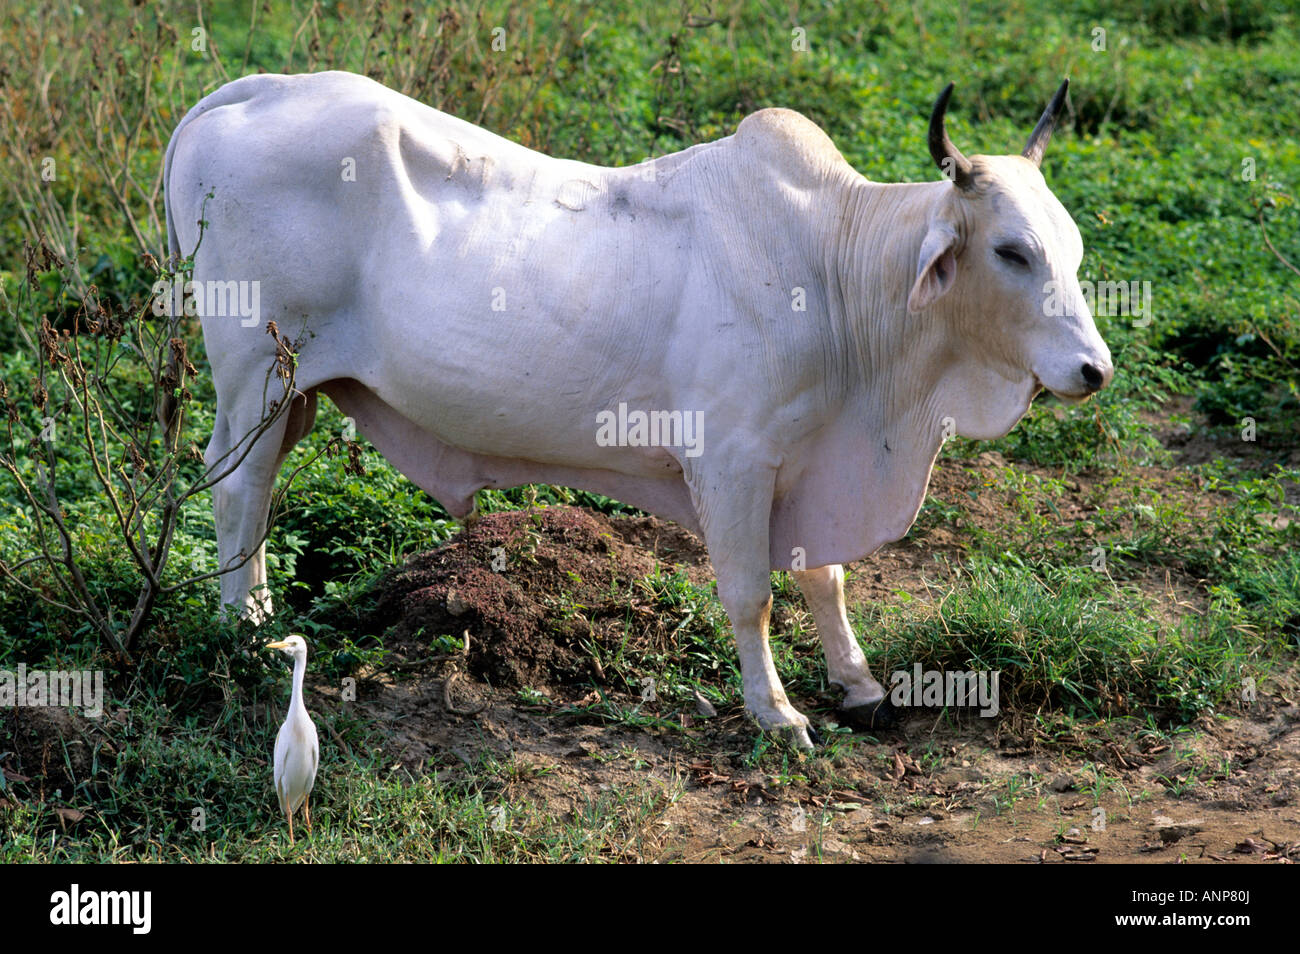 Brahma bull Brahman a breed of cattle Stock Photo